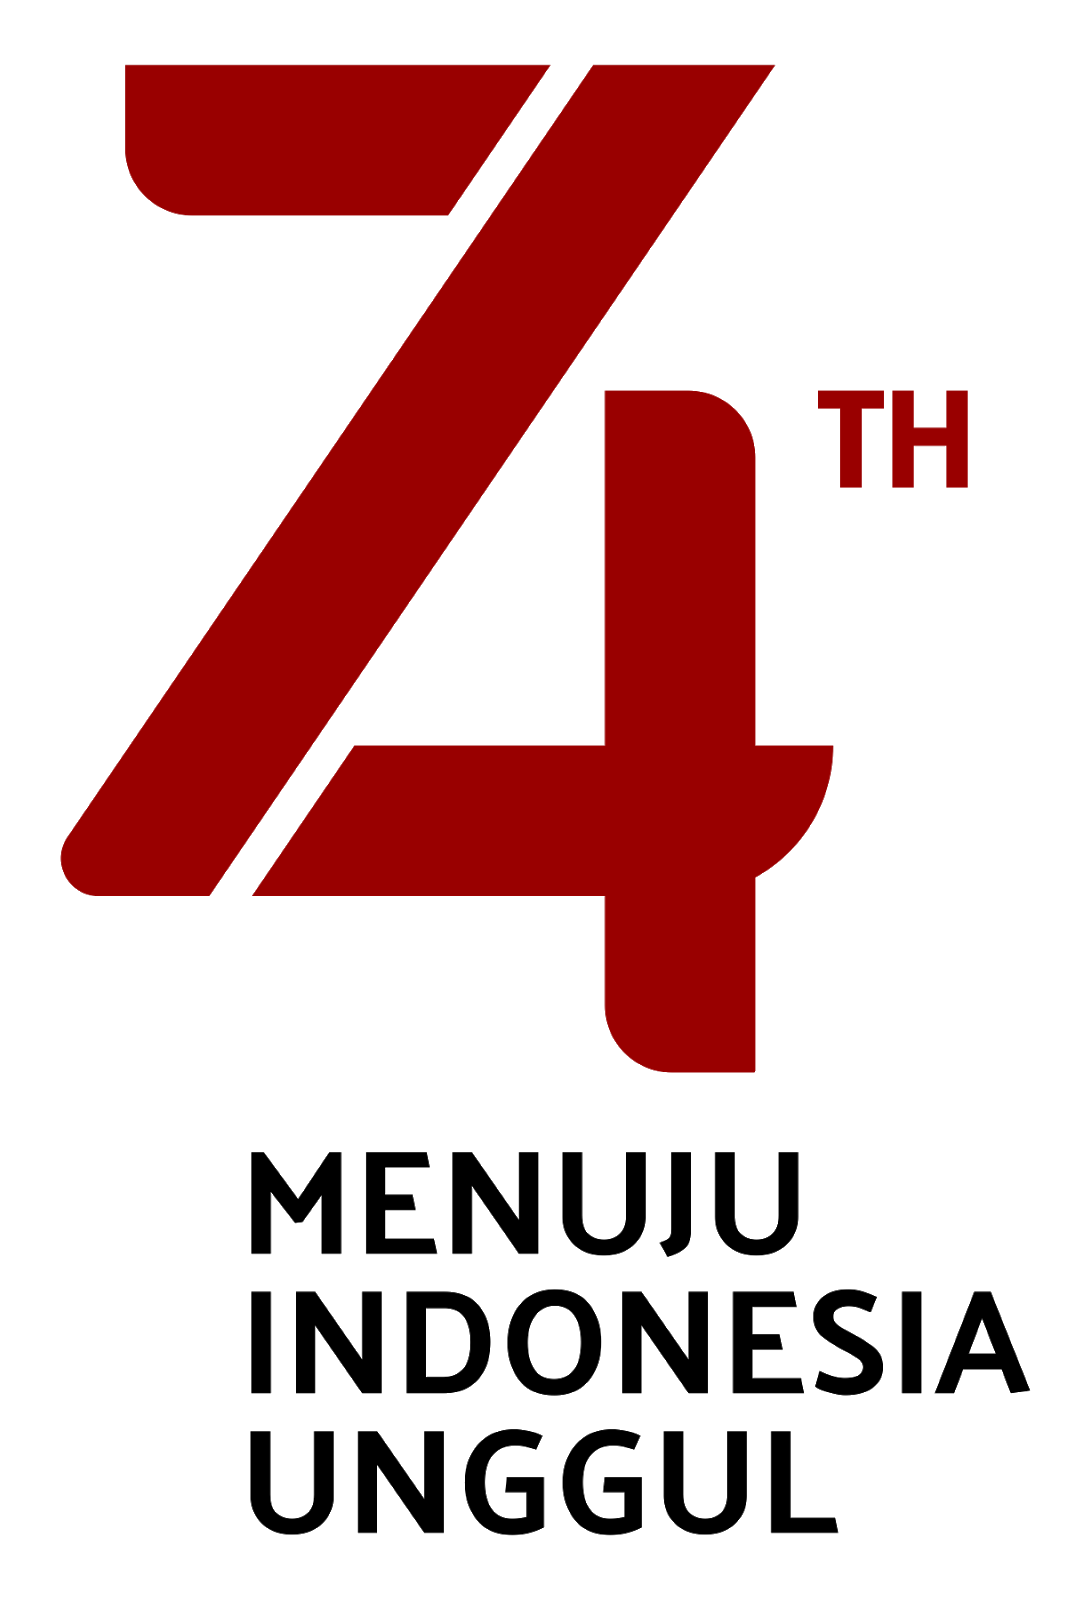 Logo Hut Ri 2019 Png - KibrisPDR